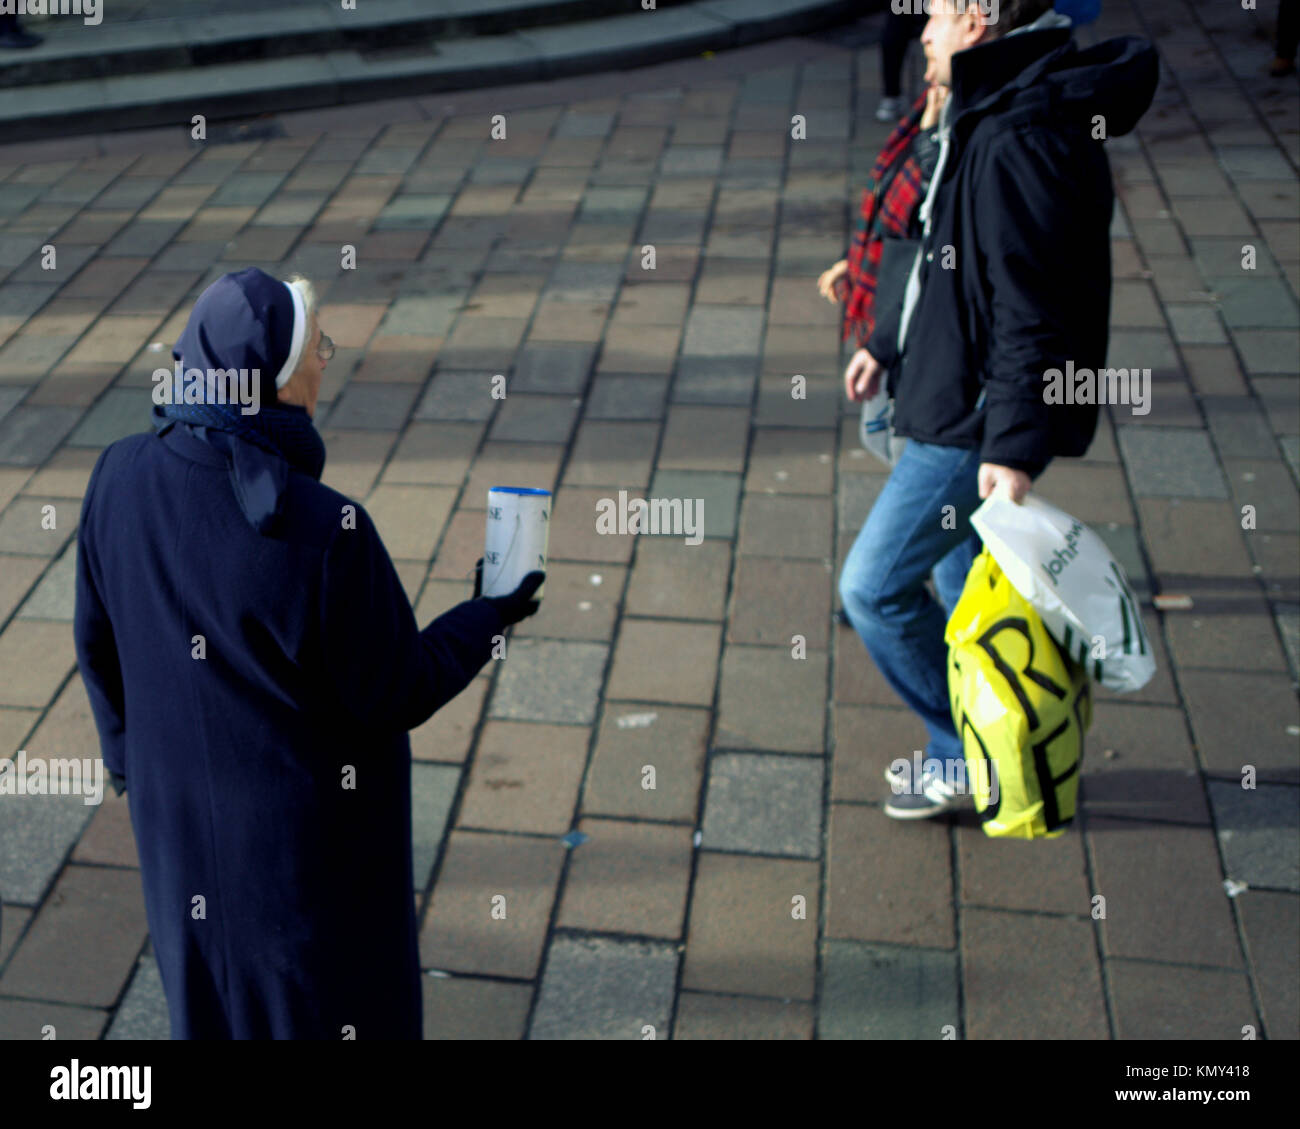 Monja católica en la calle buscando la caridad donación puede sacudir los transeúntes de la ciudad de Glasgow, Escocia, Reino Unido Foto de stock